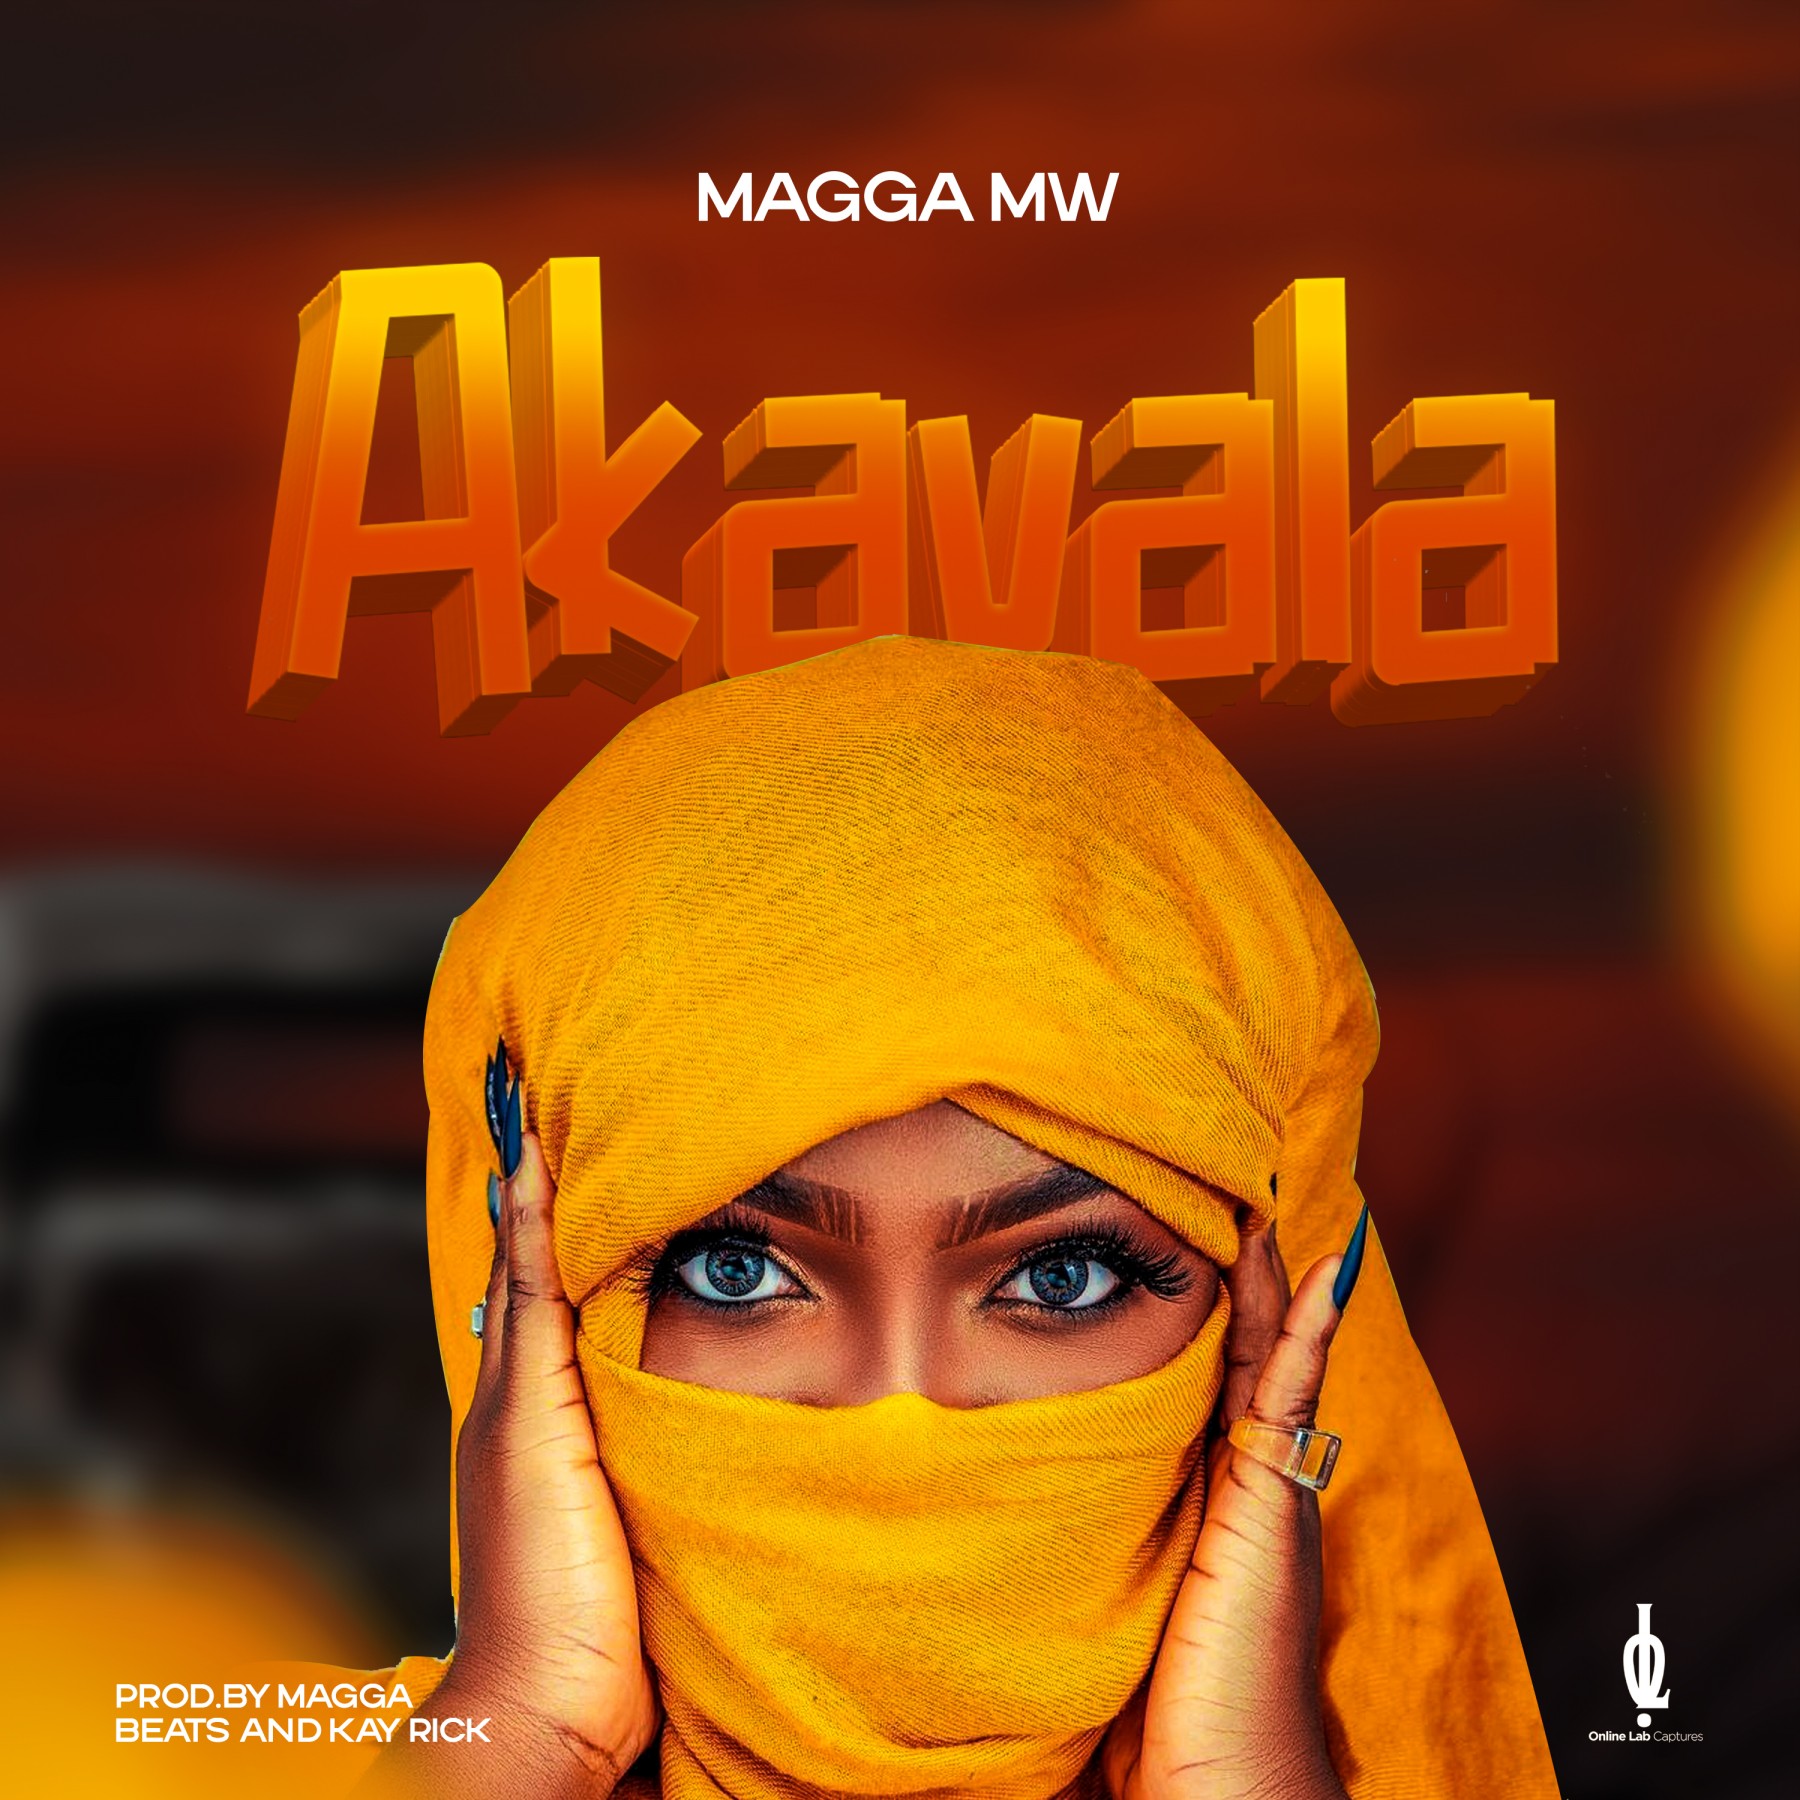 Magga-Mw-Akavala-Prod-By-Magga-Beats-And-Kay-Rick